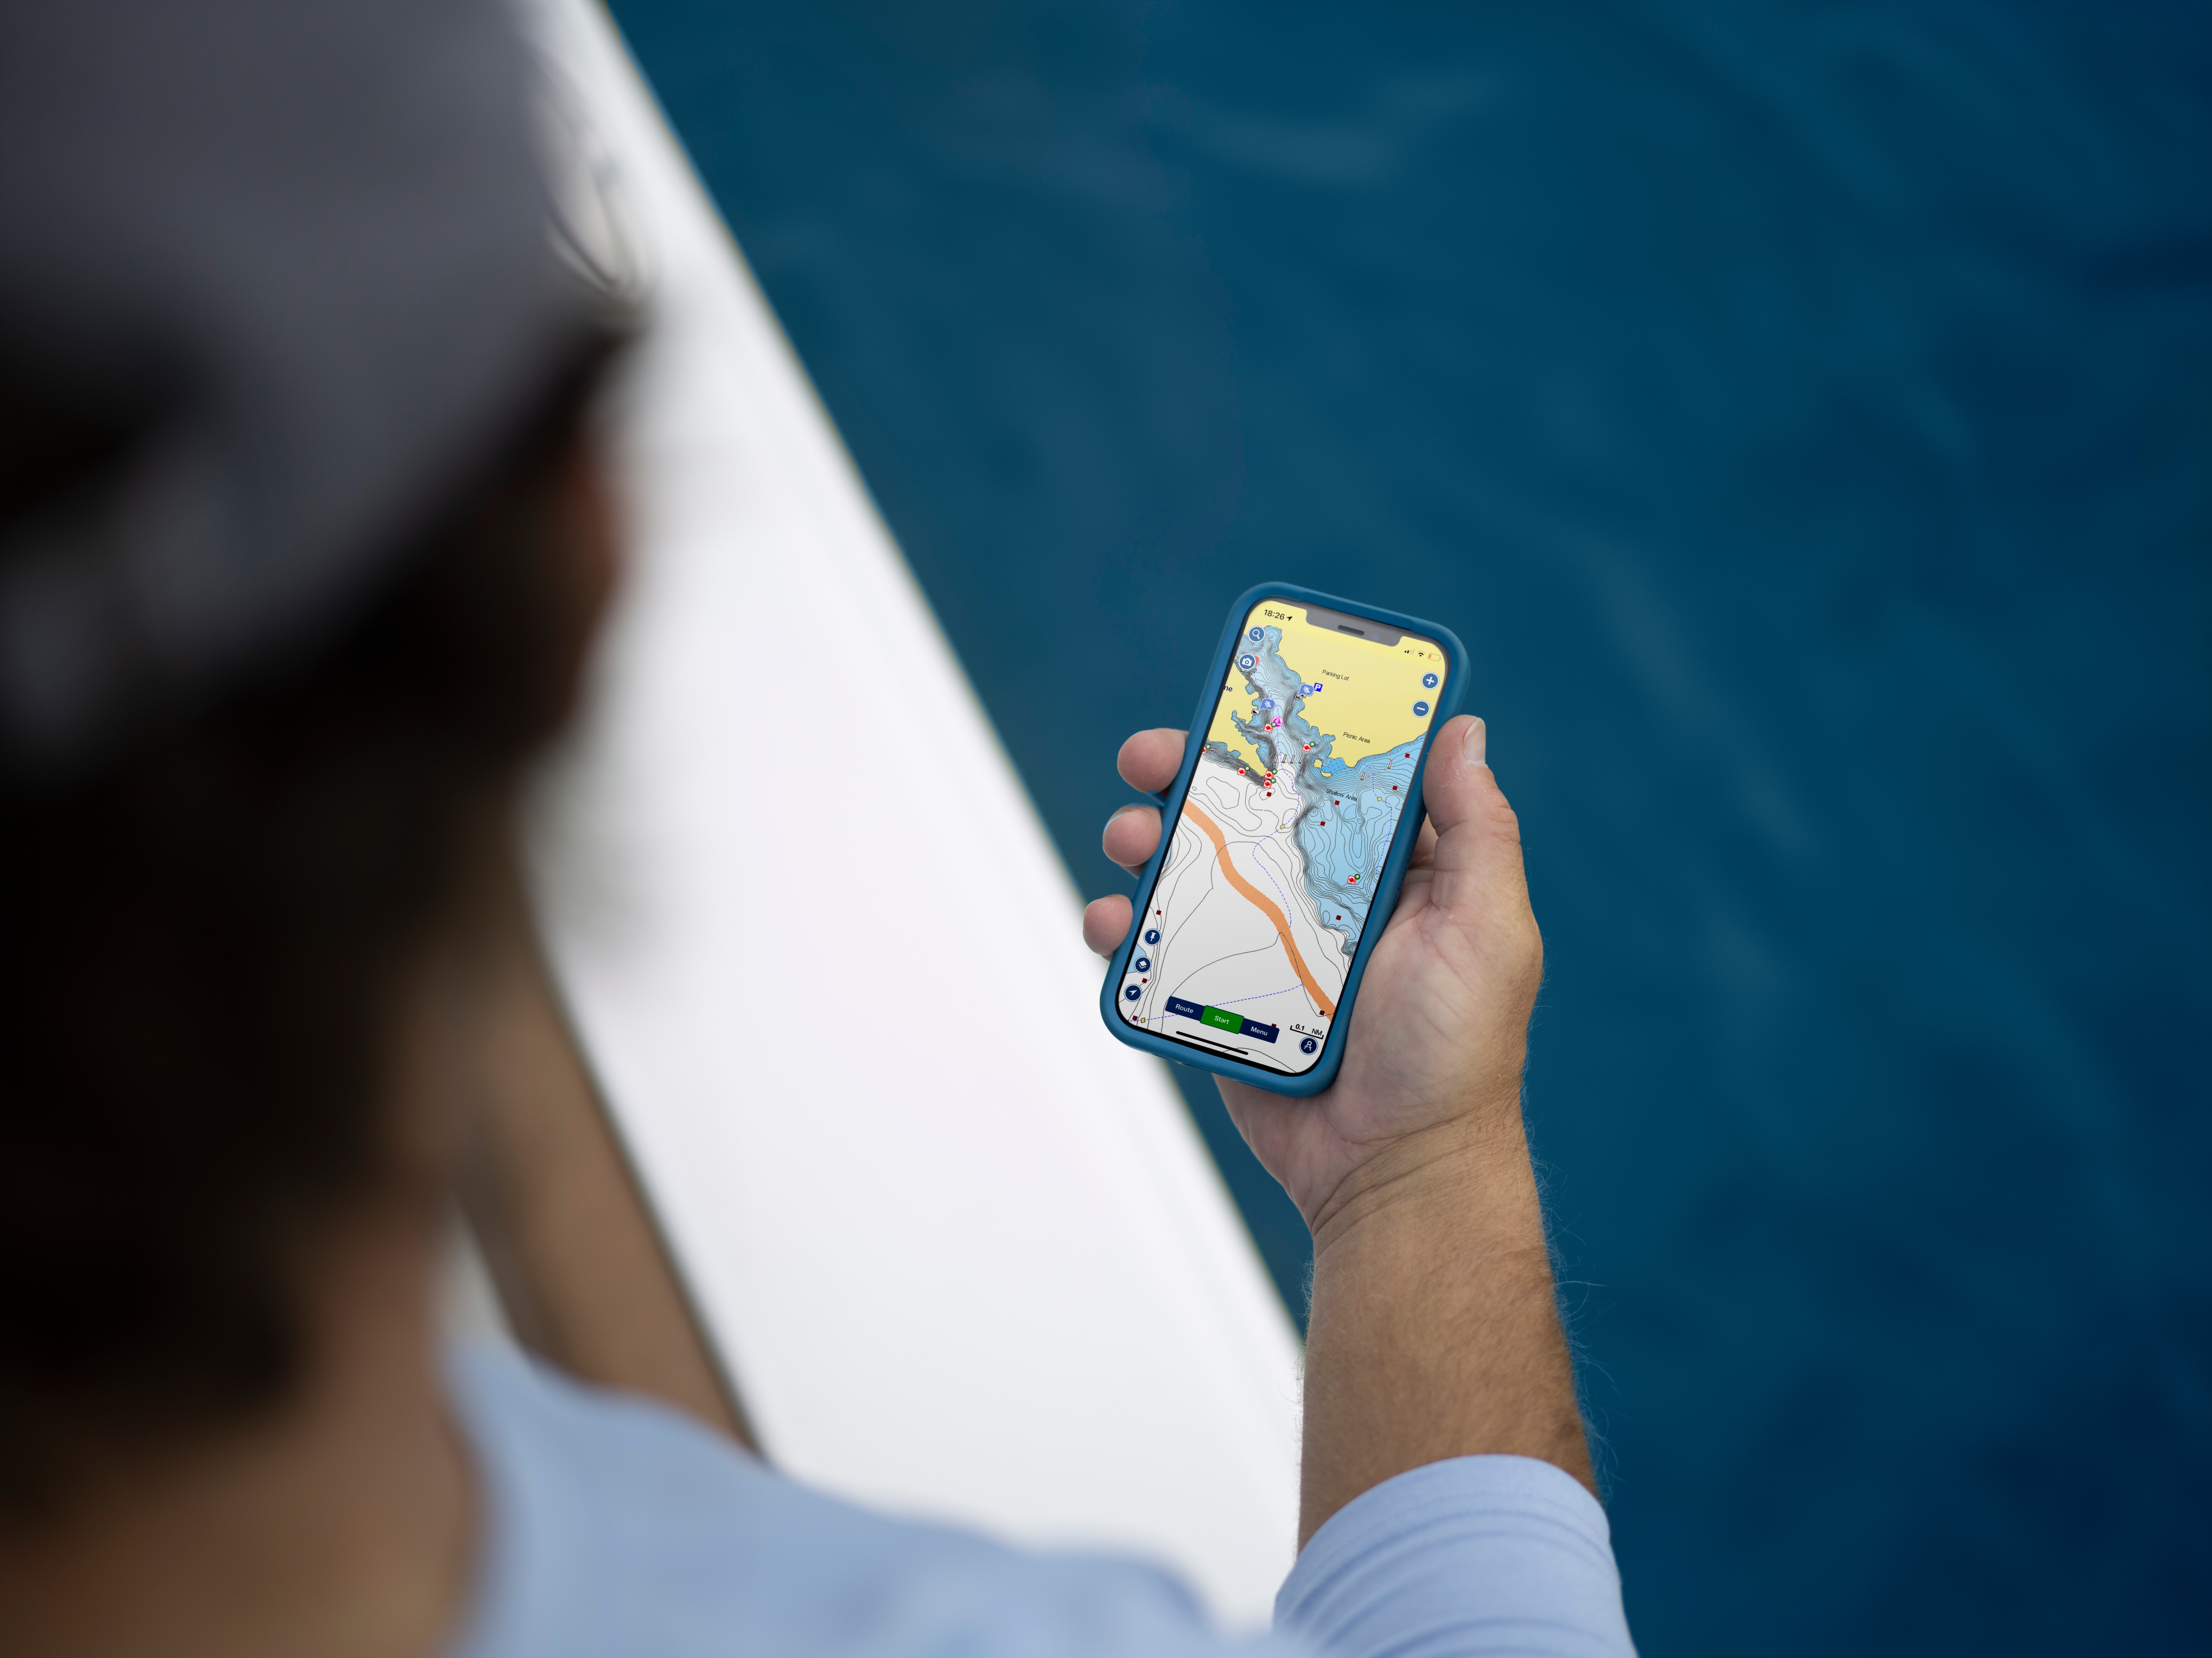 Noticia de interés de Navionics: La revista Boating Magazine destaca las nuevas funciones de la app Boating